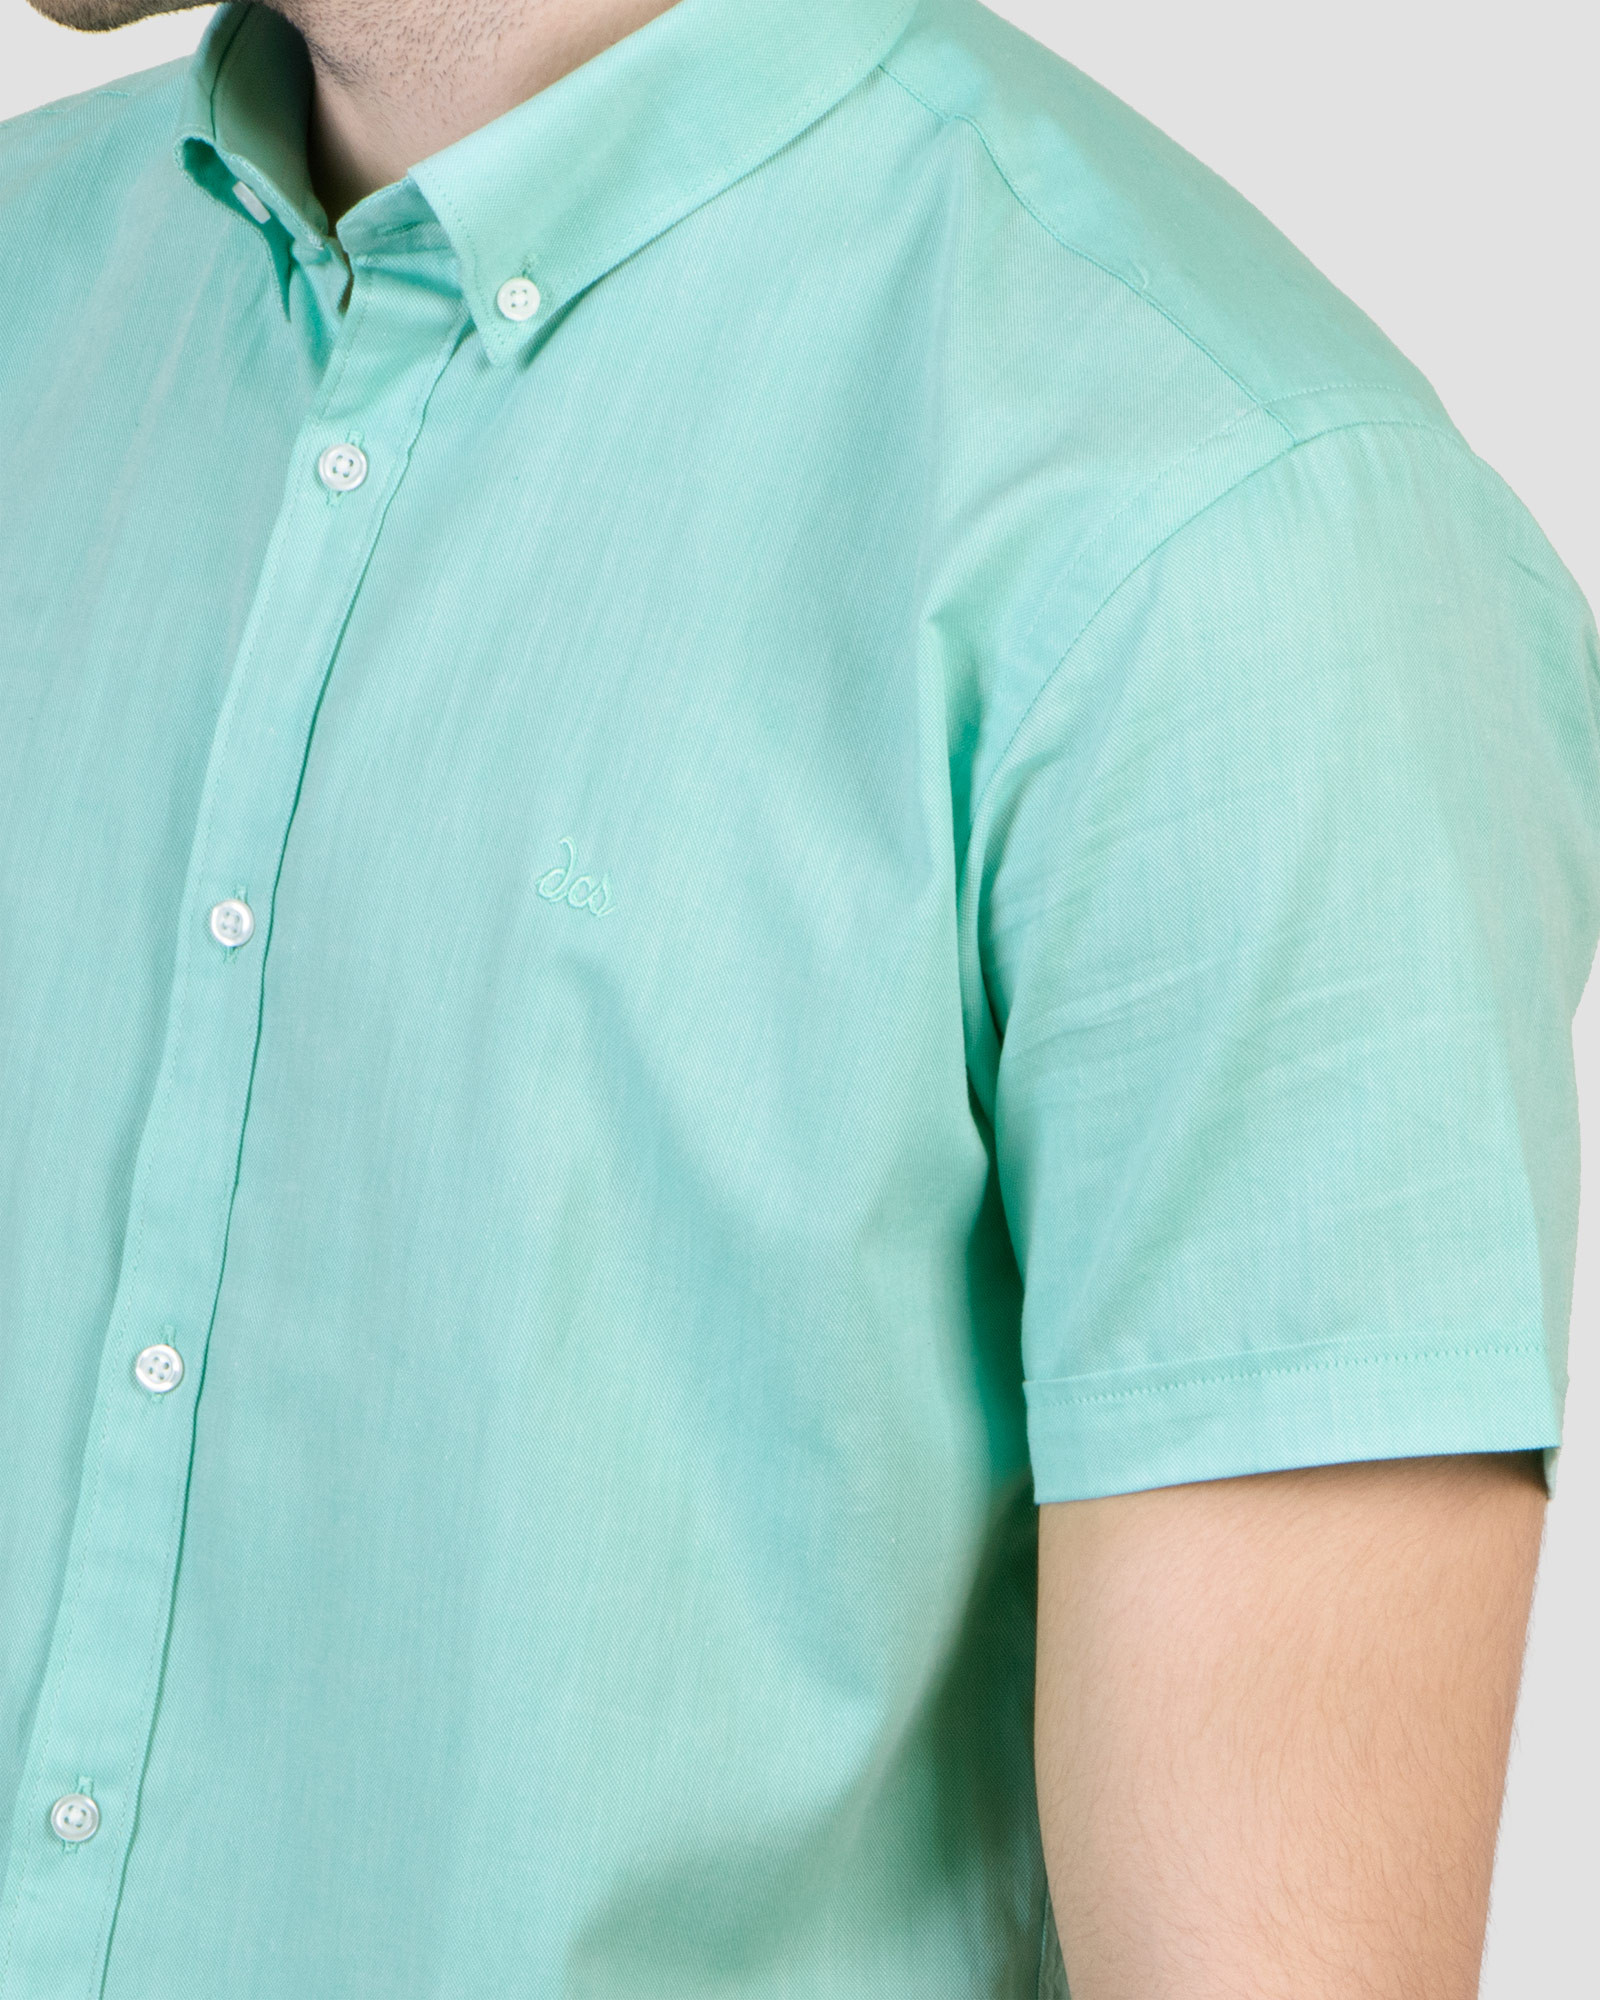 پیراهن مردانه ساده سبز روشن شیک18222102